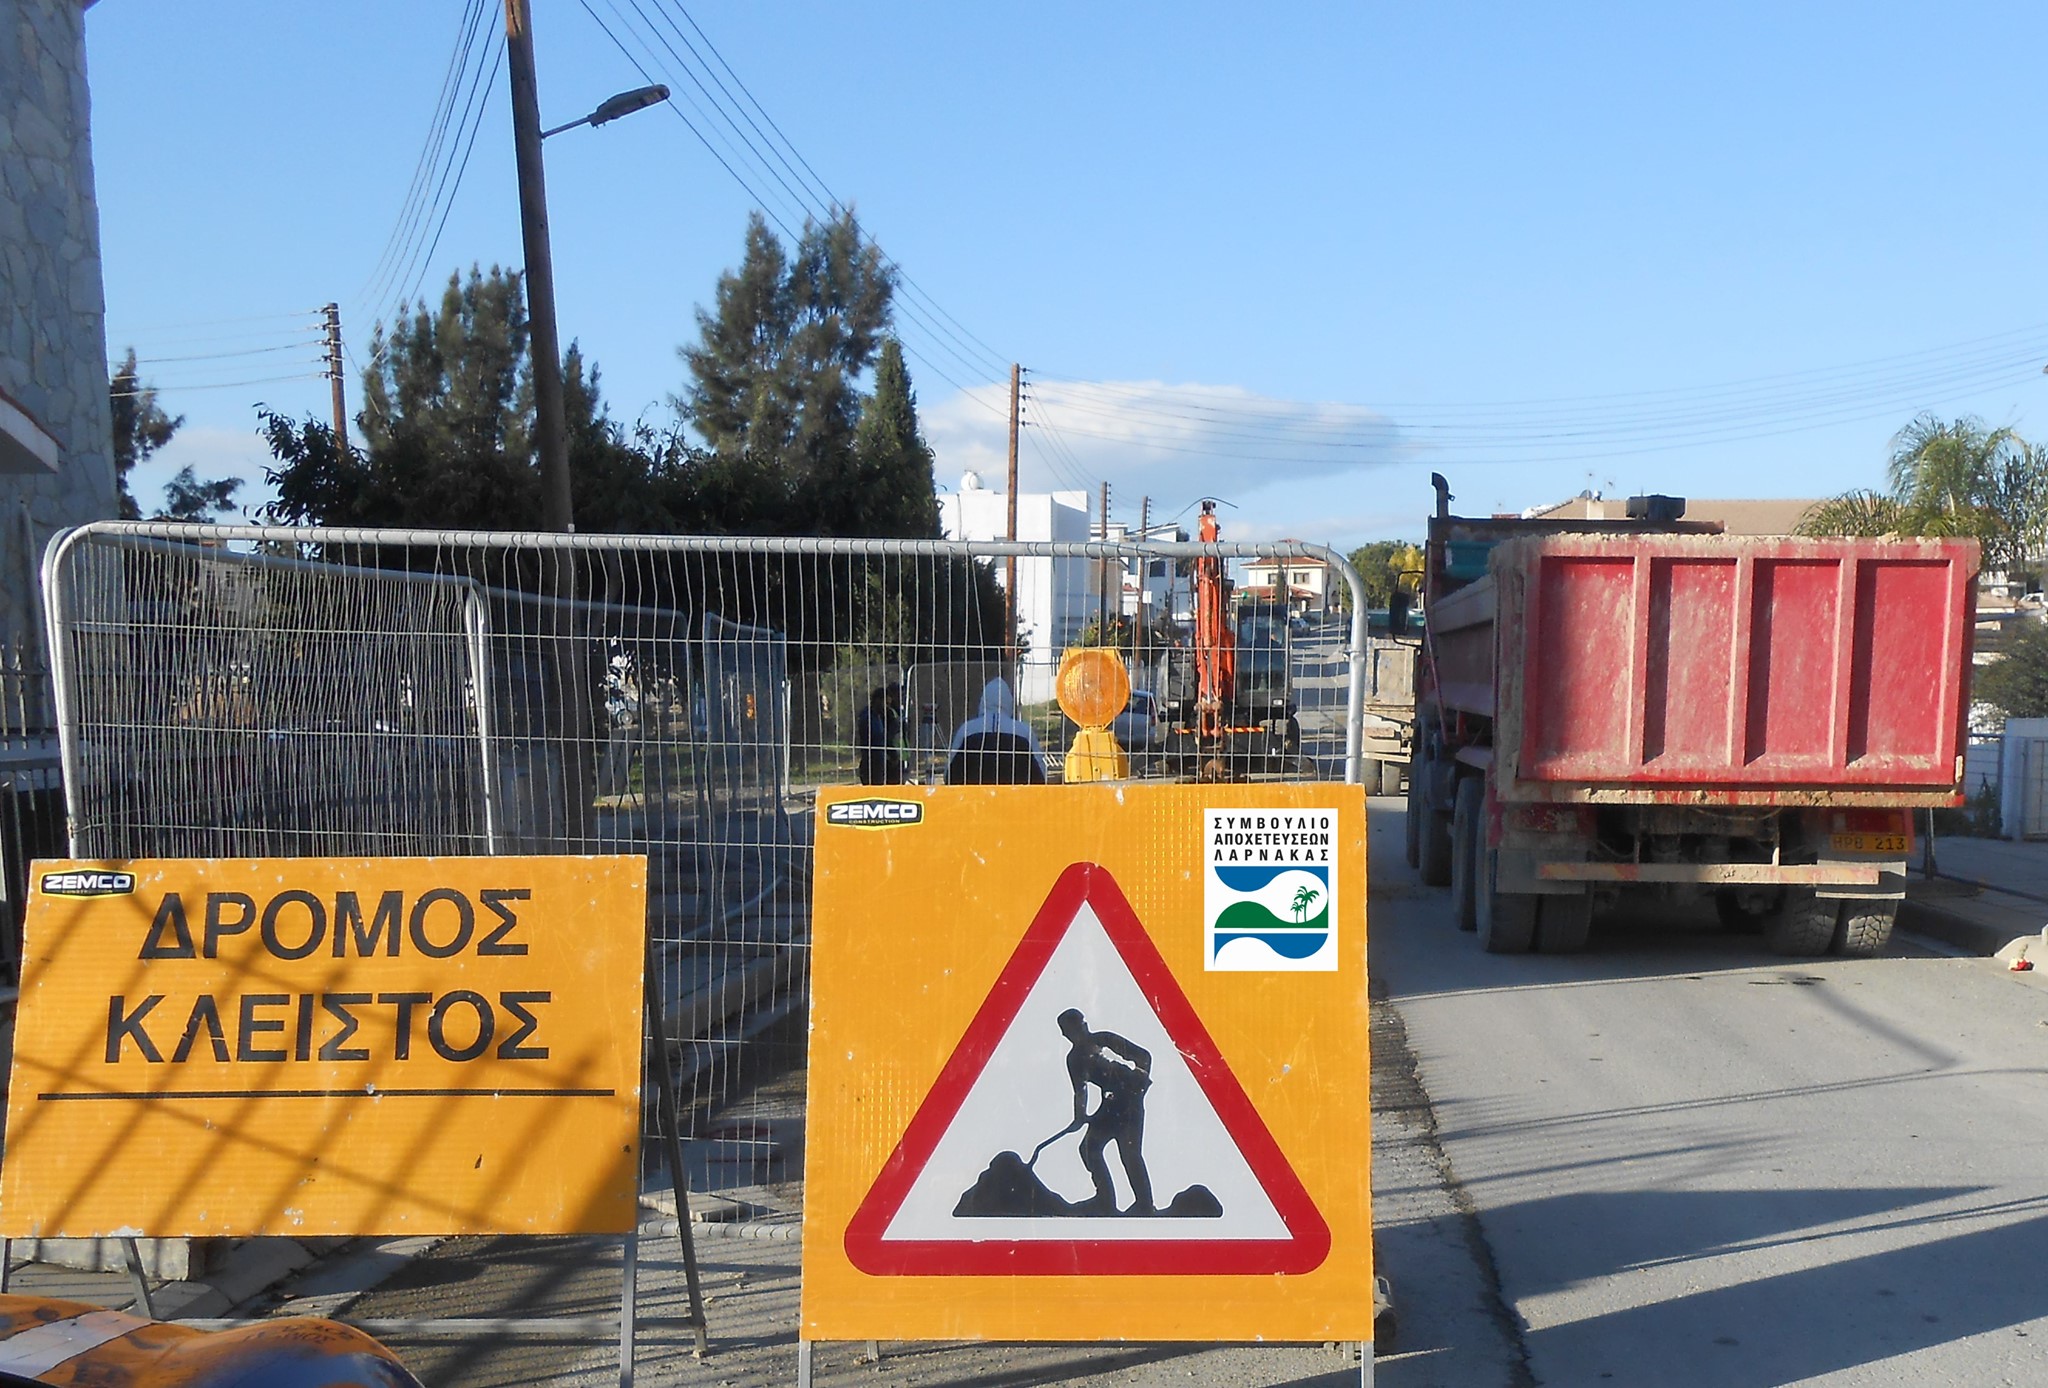 Δείτε ποιοι δρόμοι θα είναι κλειστοί αυτή την εβδομάδα στη Λάρνακα, λόγω κατασκευαστικών έργων